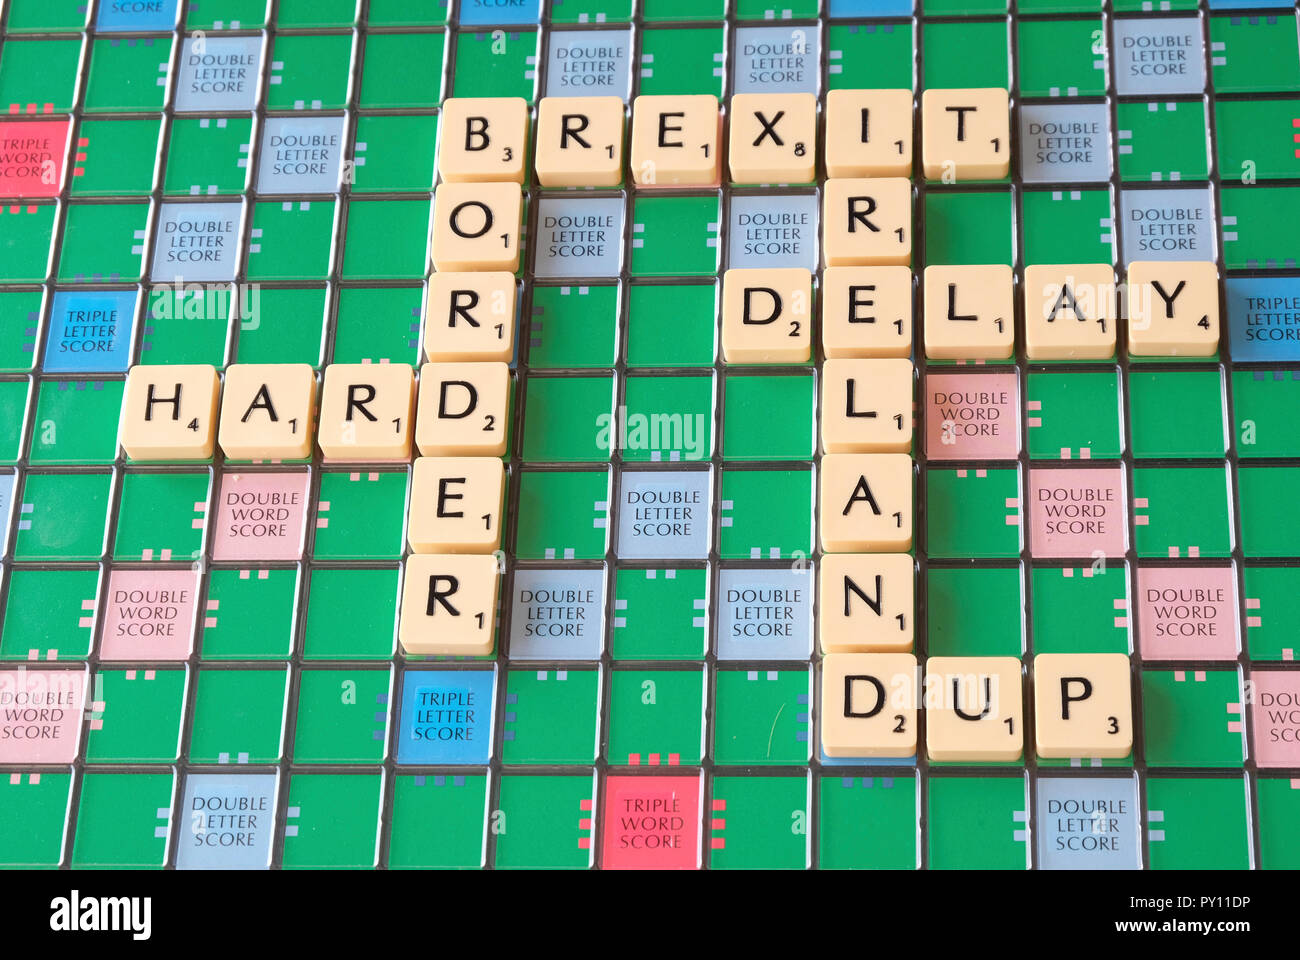 Scrabble board Übersicht Brexit themed Worte über den irischen Grenze problem Stockfoto